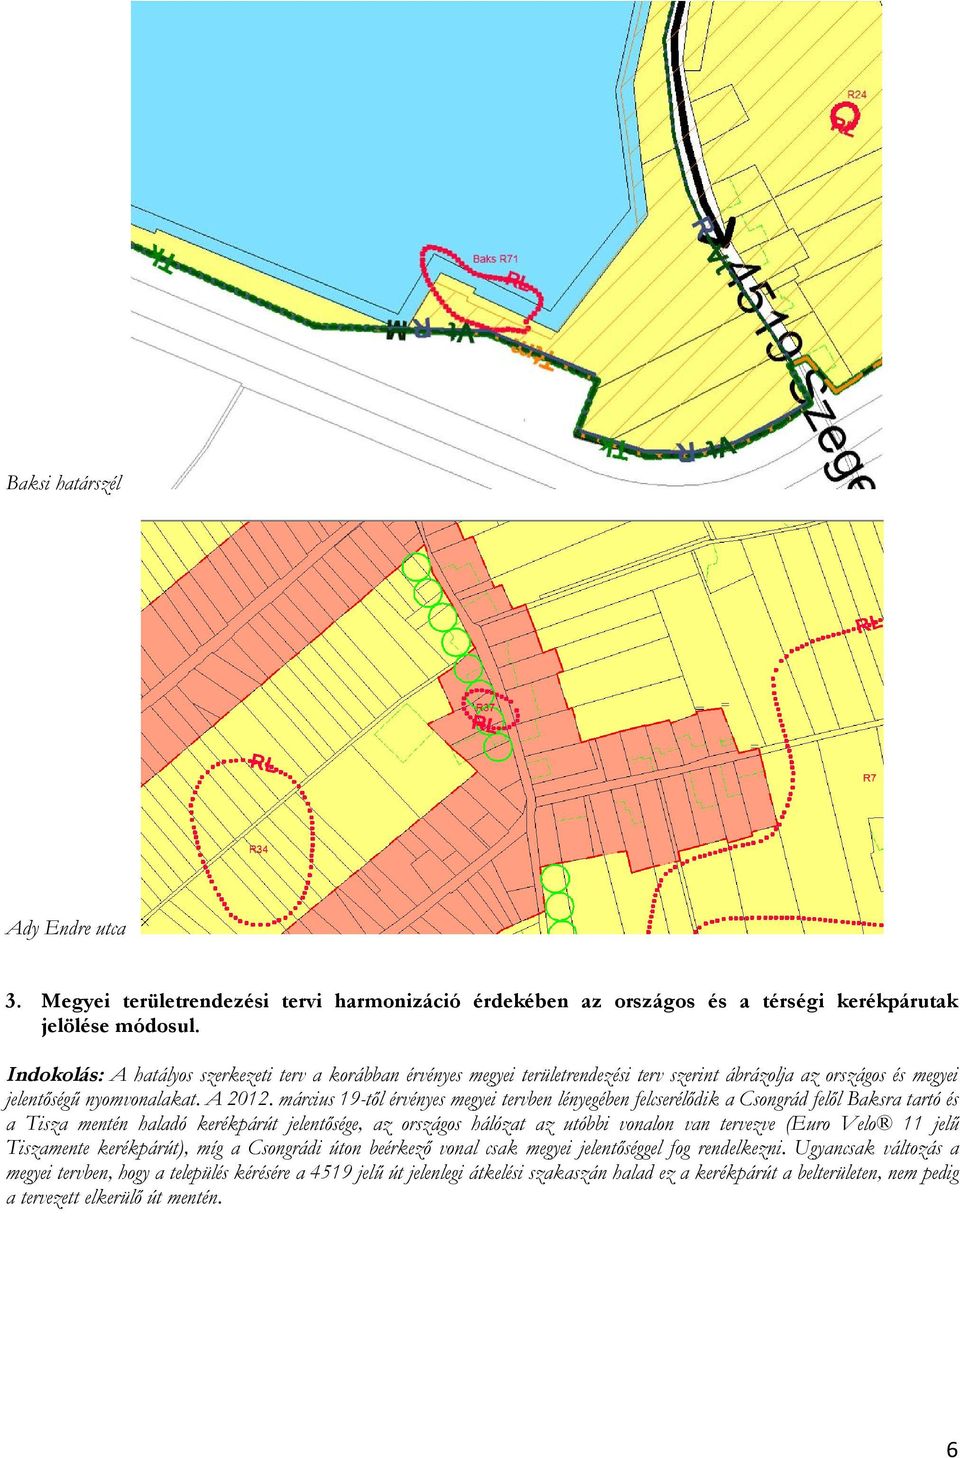 március 19-től érvényes megyei tervben lényegében felcserélődik a Csongrád felől Baksra tartó és a Tisza mentén haladó kerékpárút jelentősége, az országos hálózat az utóbbi vonalon van tervezve (Euro